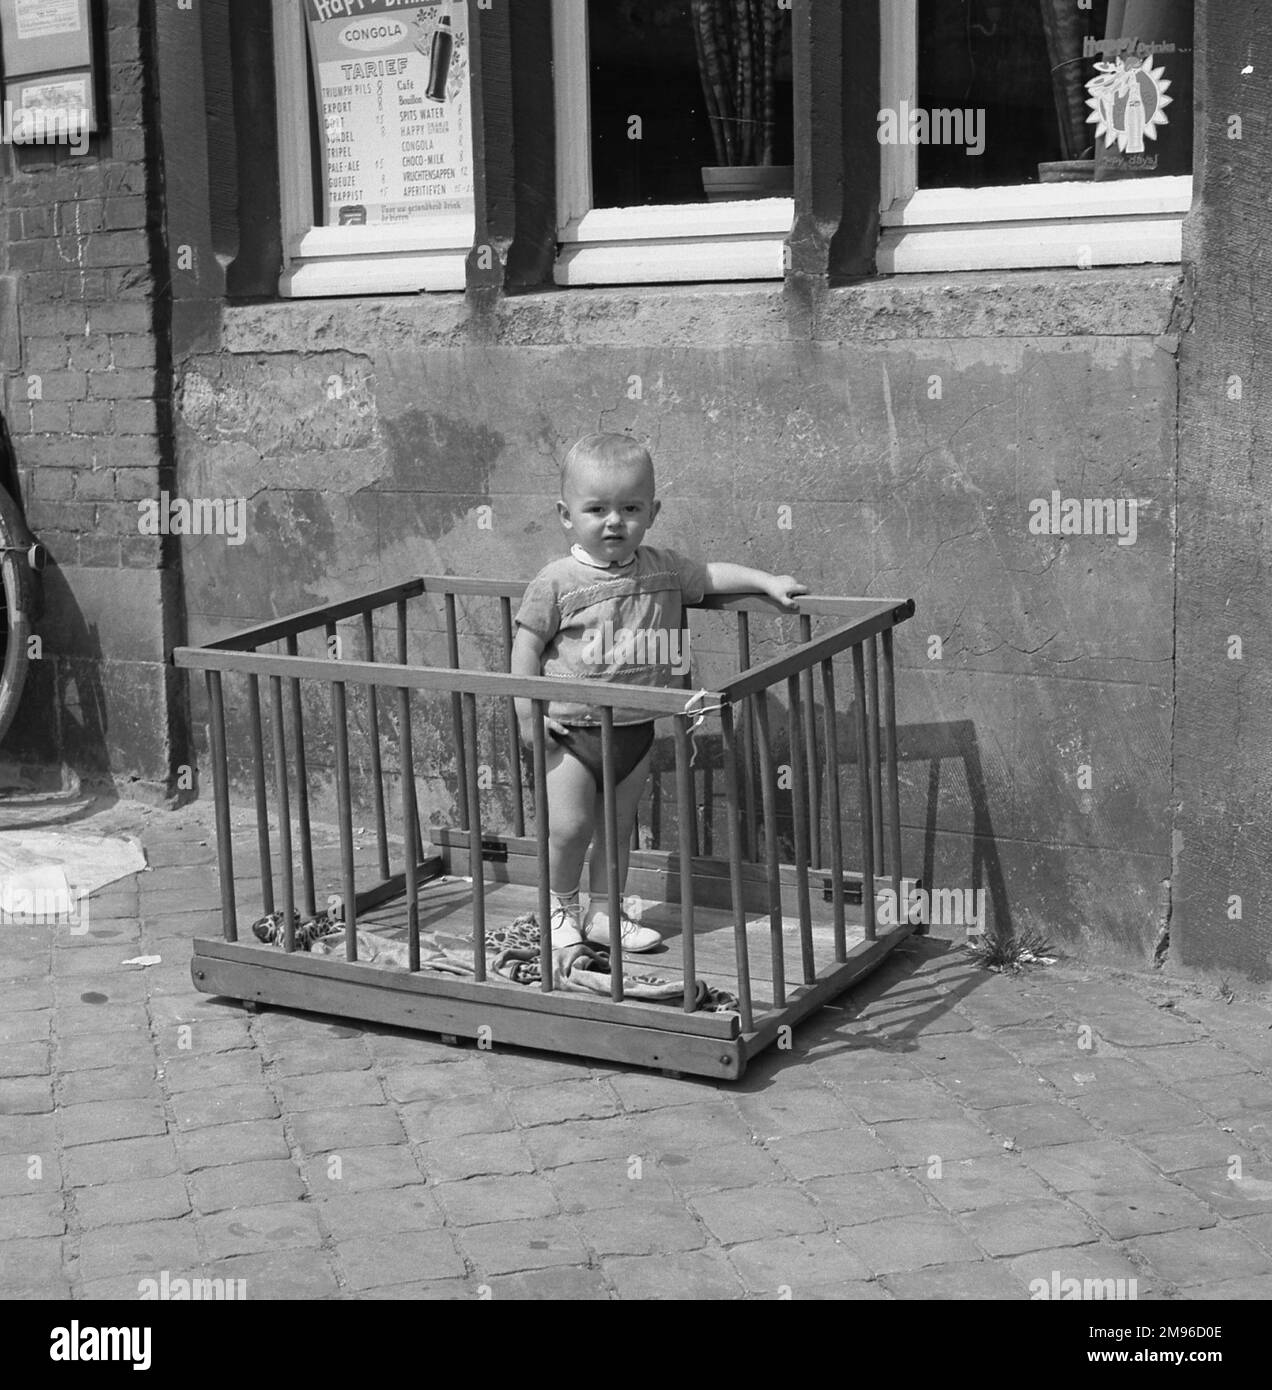 Un petit garçon se tient à l'intérieur d'un parc sur un trottoir à l'extérieur d'un café. Banque D'Images